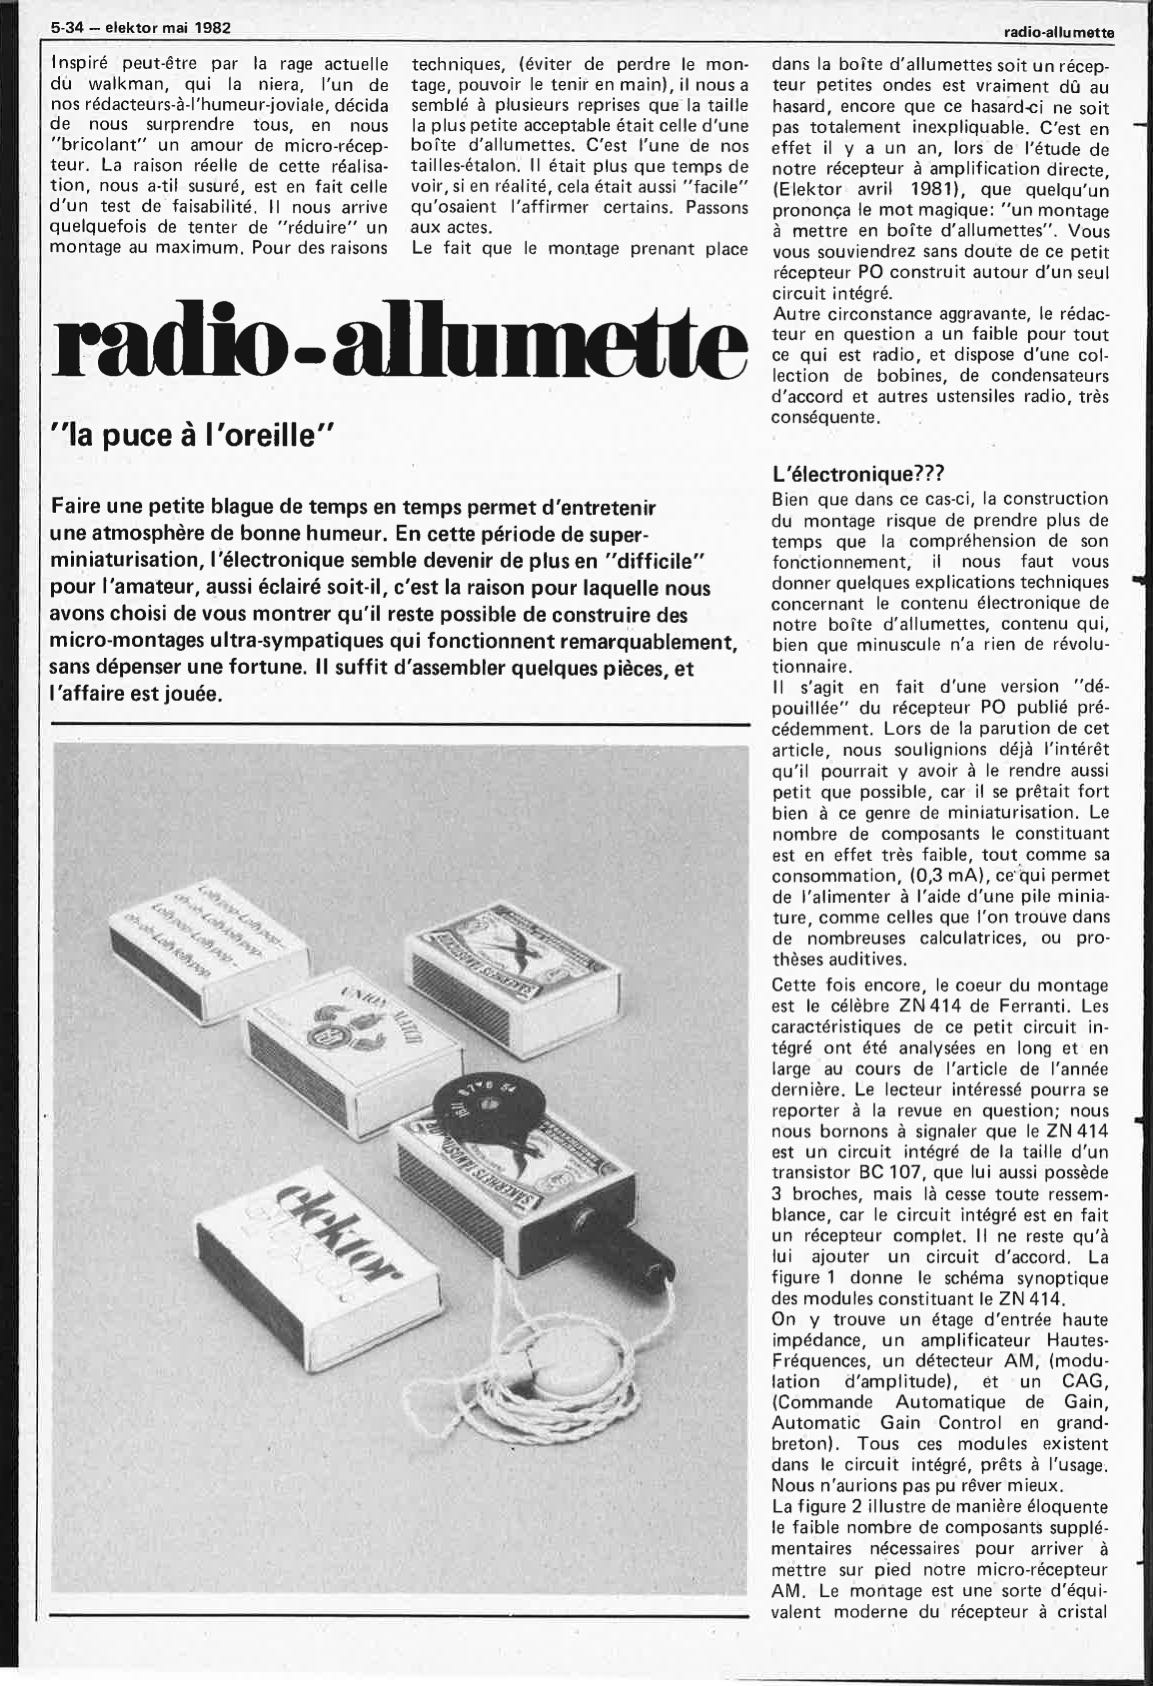 radio-allumette